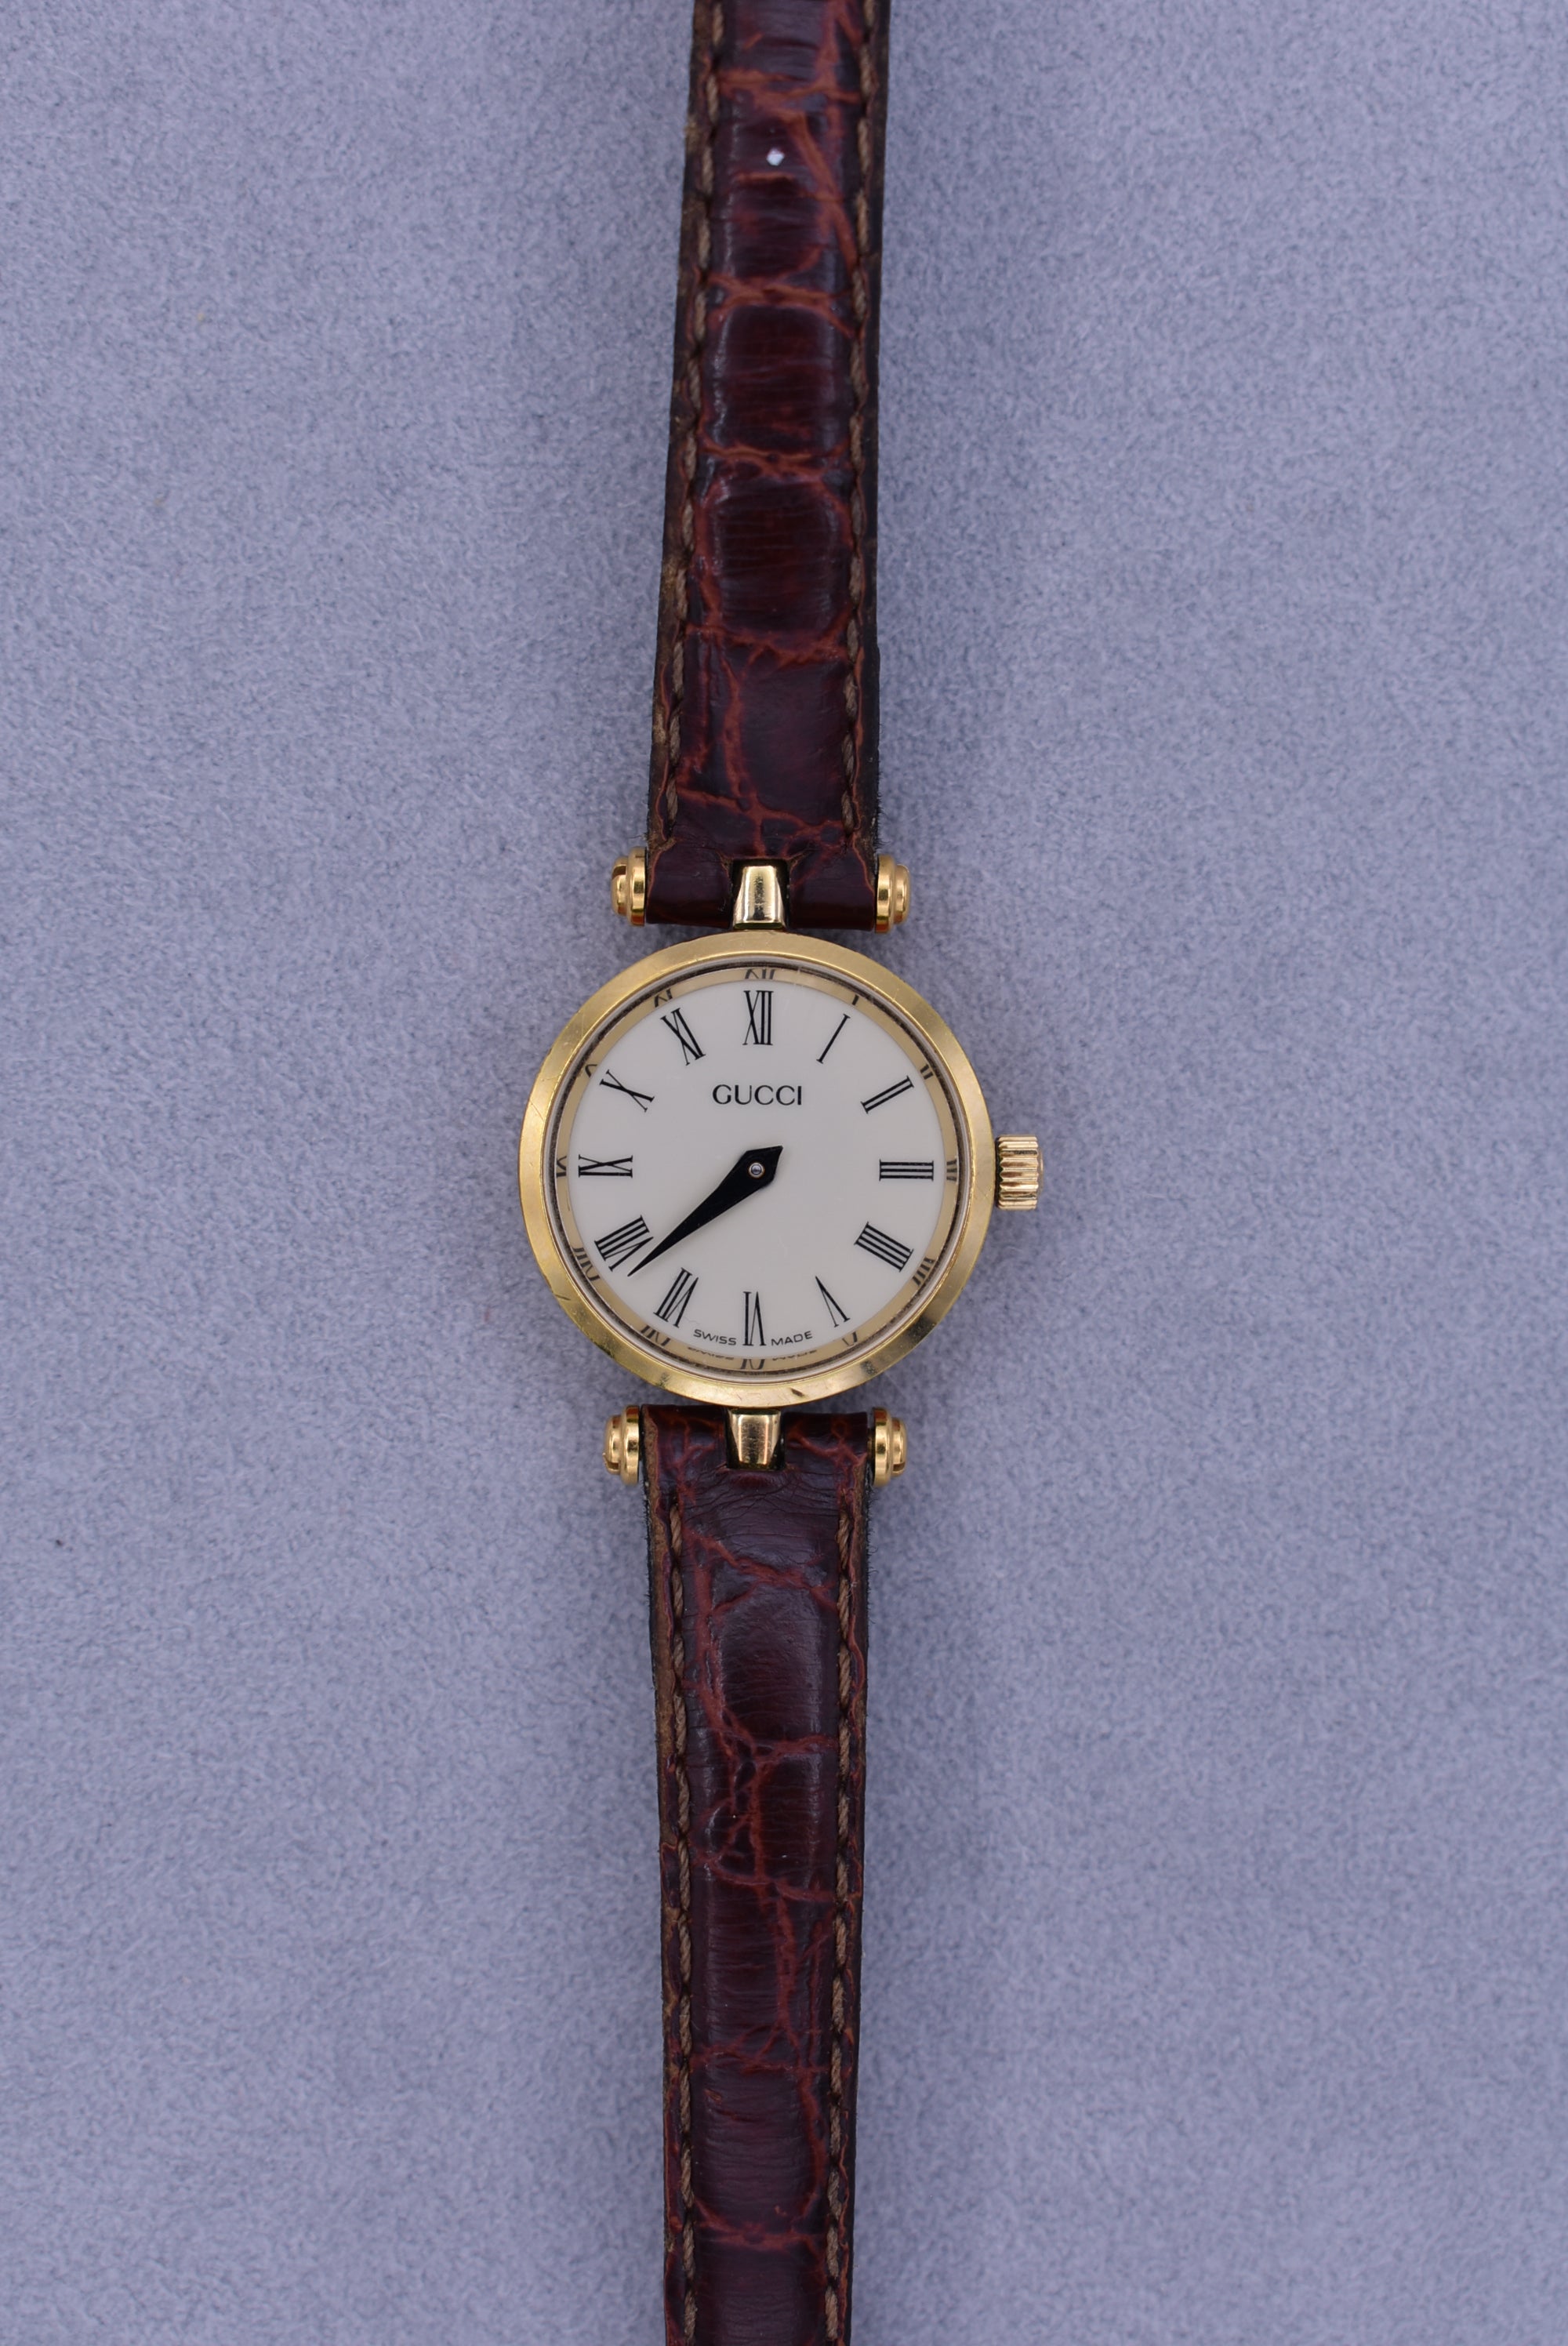 1990s Hamilton Commemorative Edition Men's Quartz Wrist-Watch W/Box & –  Mecalco & Co.